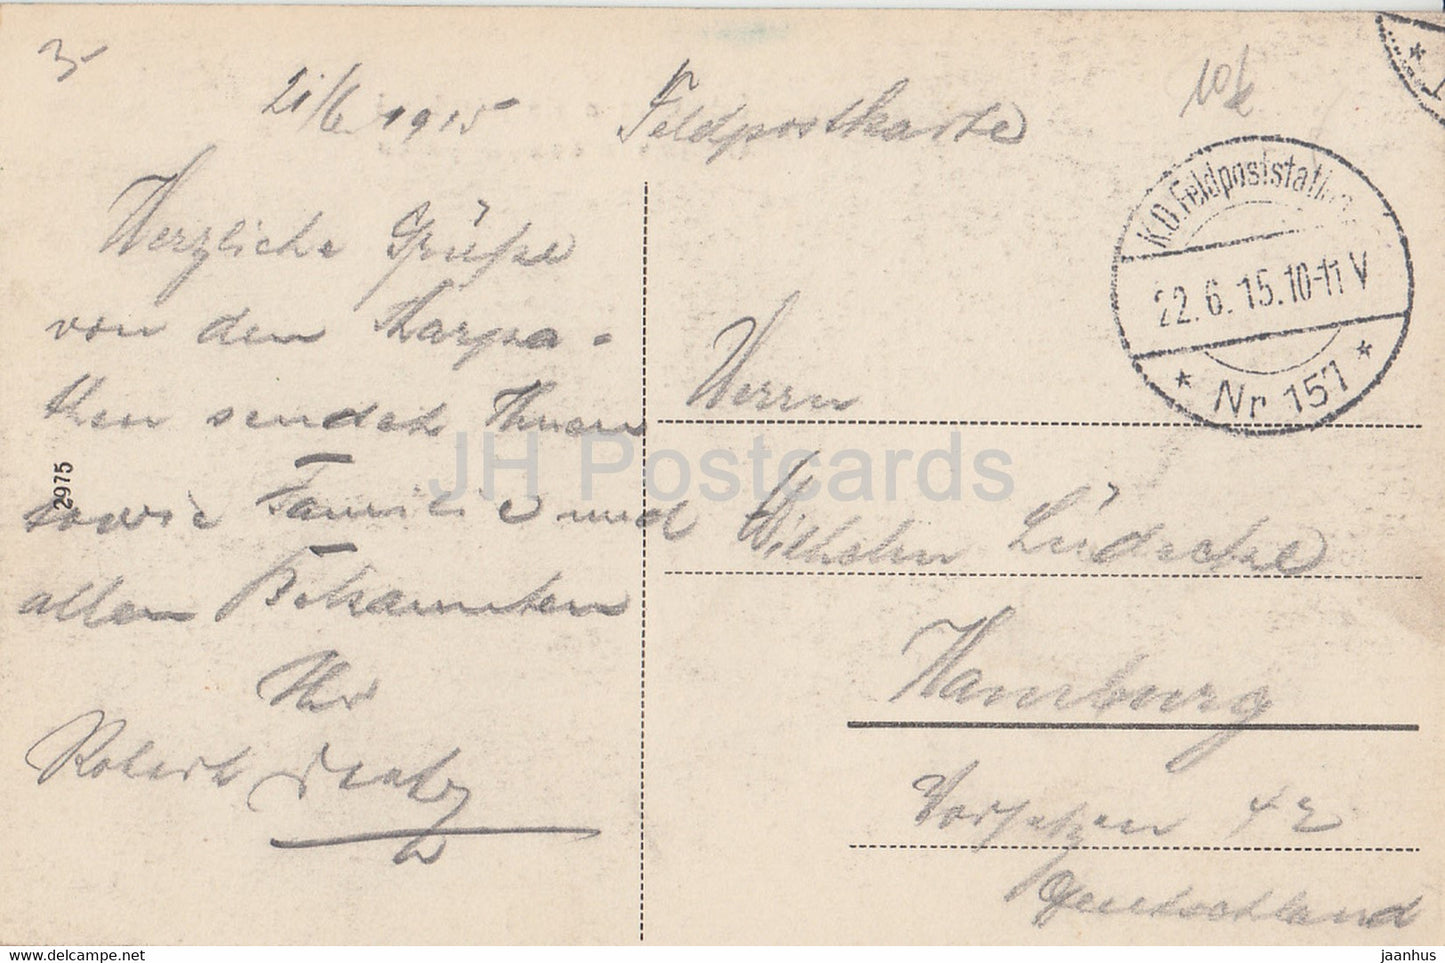 Udvozlet a Karpatokbol - Gruss von den Karpaten - Karpaten - Feldpost - alte Postkarte - 1915 - Ungarn - gebraucht